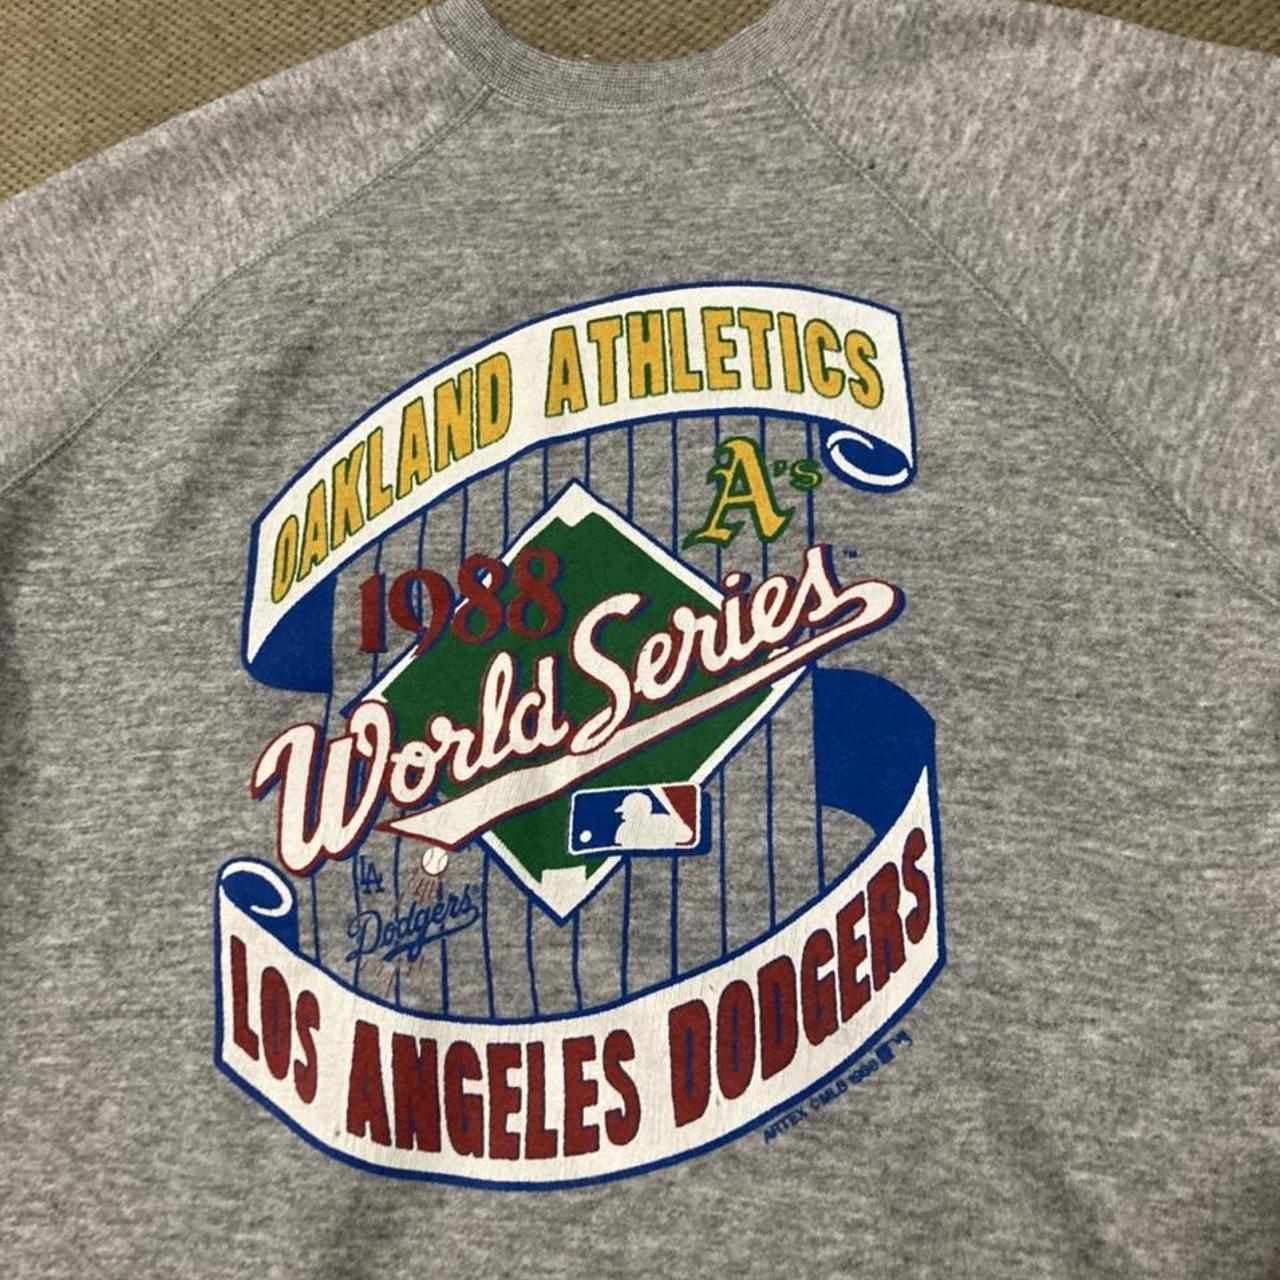 VTG 1988 LA Dodgers World Series T Shirt MADE IN - Depop